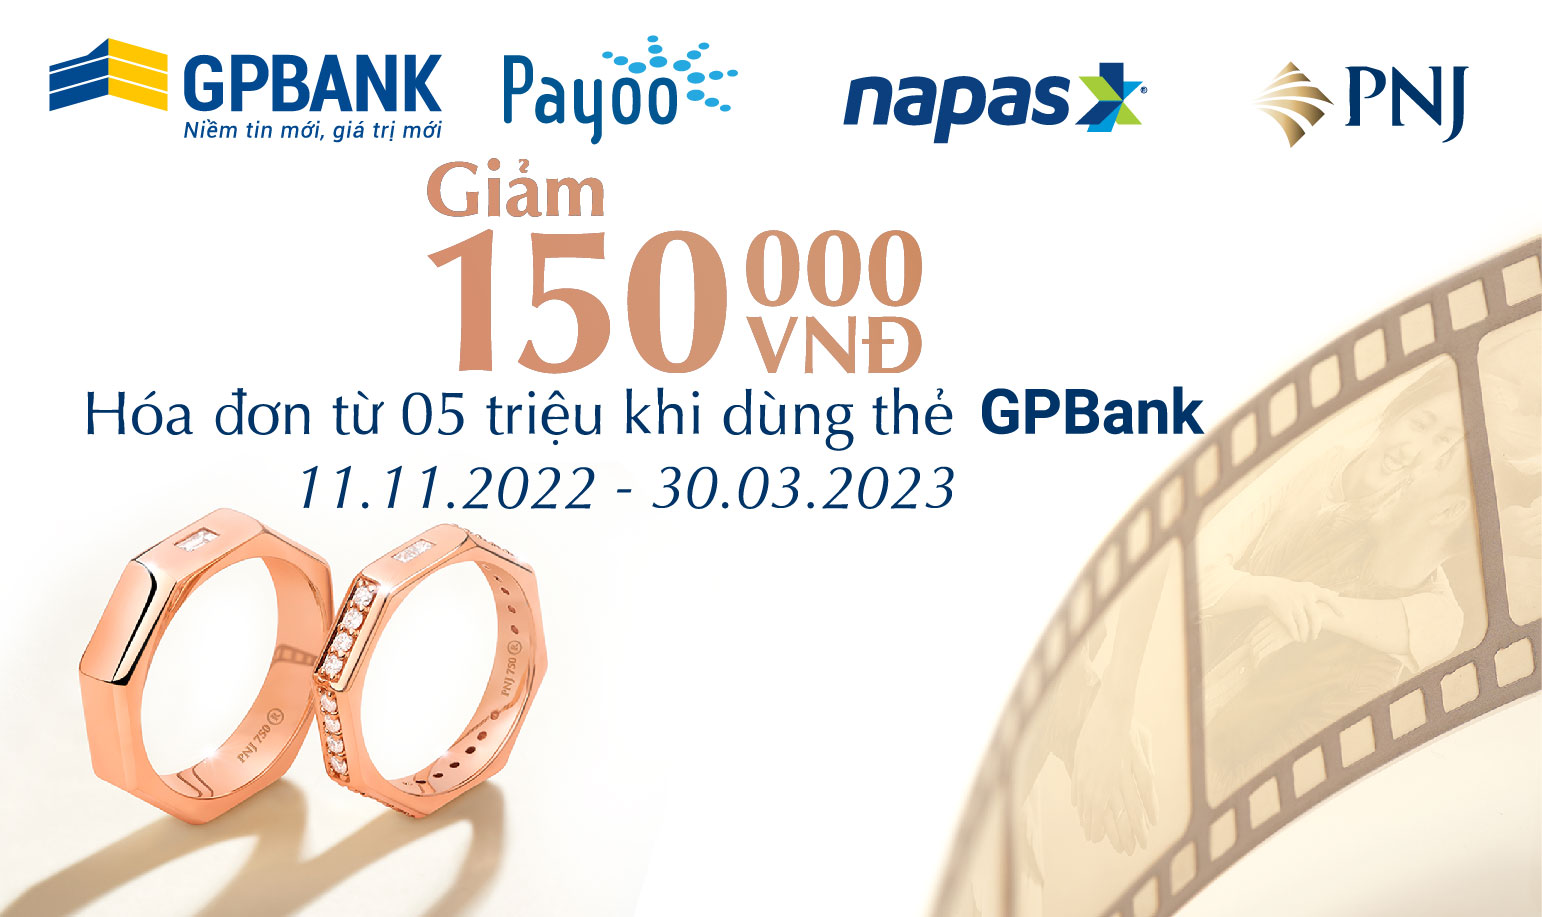 Ưu đãi cho chủ thẻ GPBank tại các cửa hàng PNJ